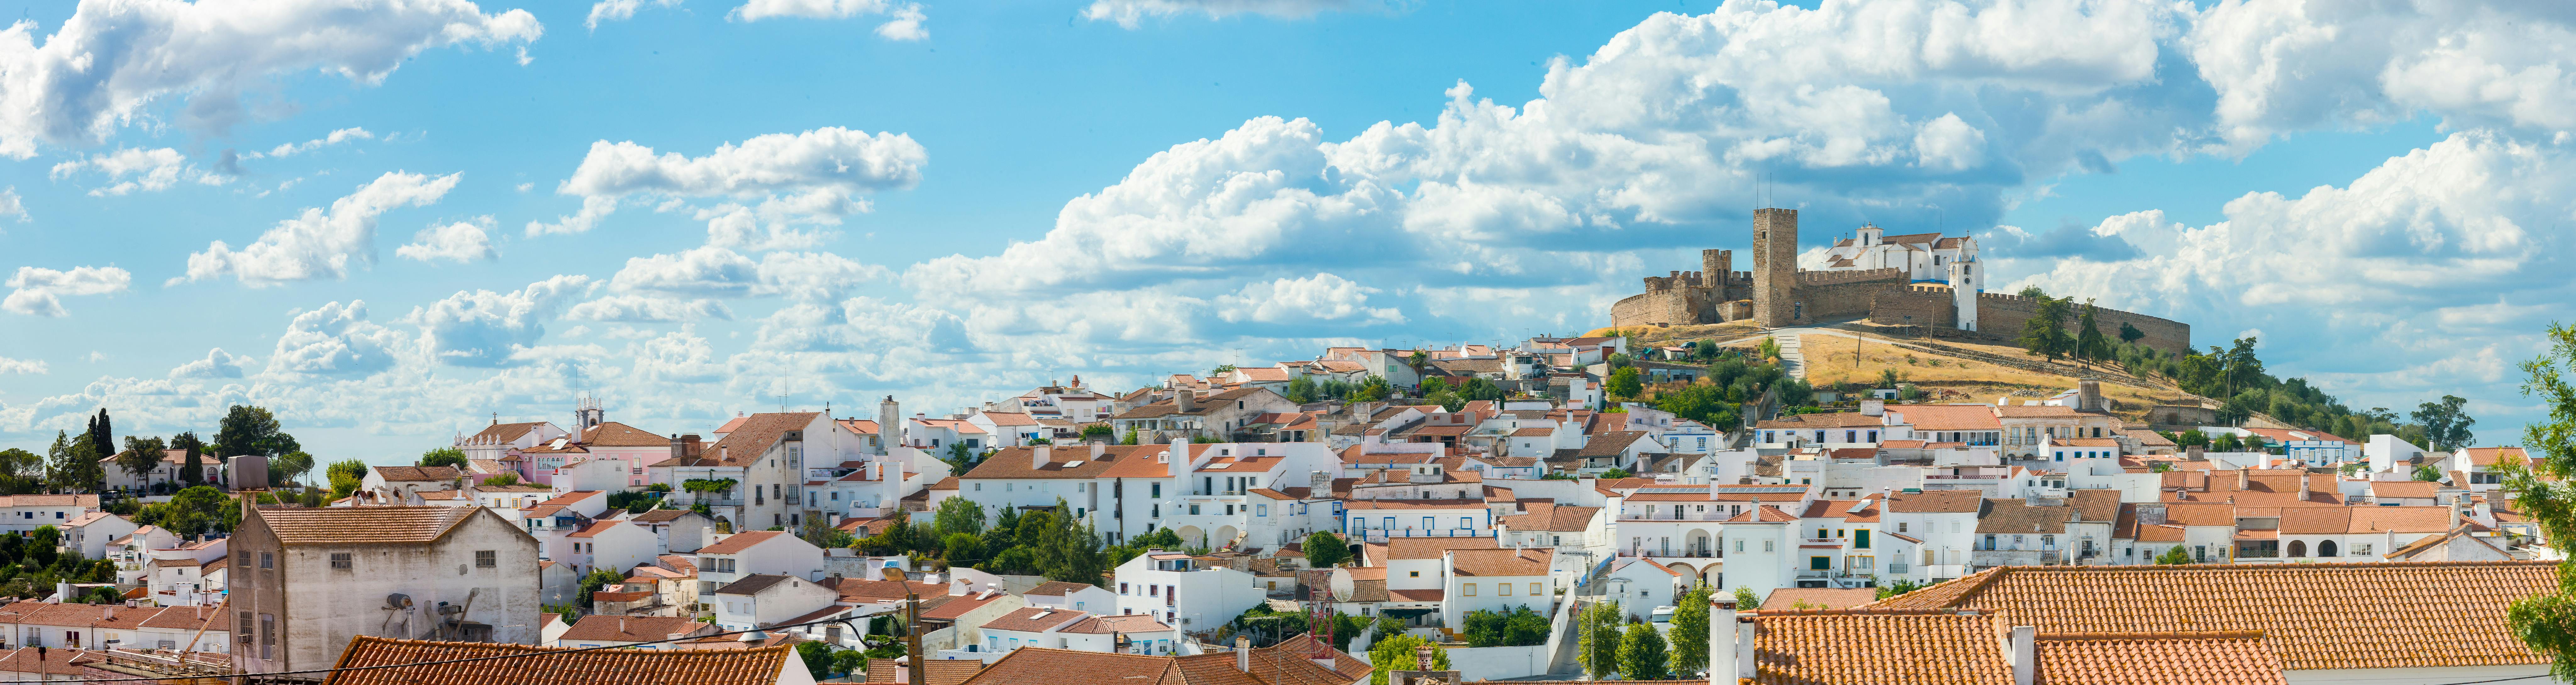 Excursão privada em Évora e Monsaraz saindo de Lisboa com degustação de vinhos e gastronomia